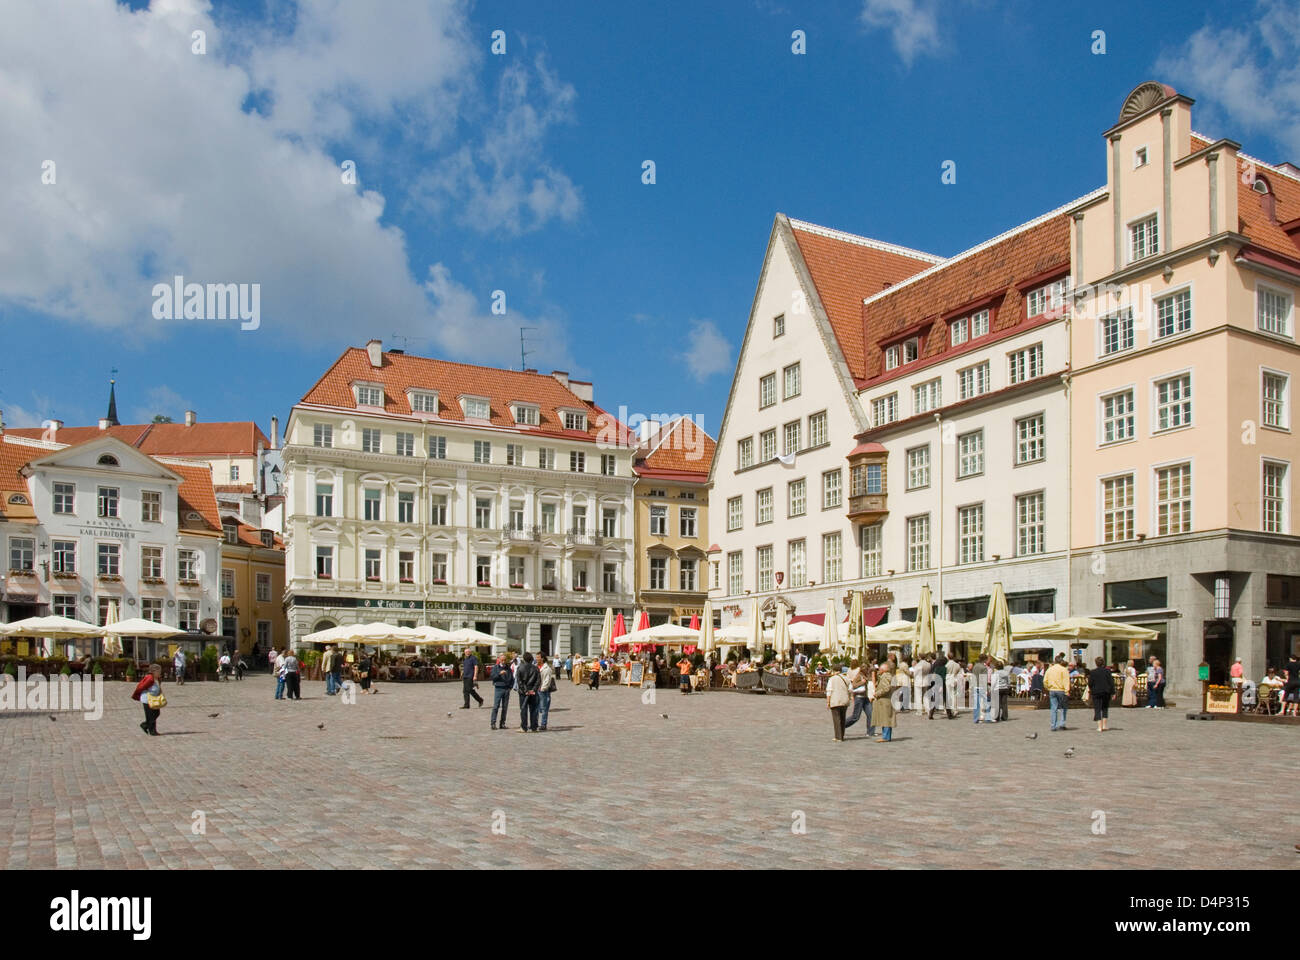 Old Town Square, Tallinn, Estonia Stock Photo